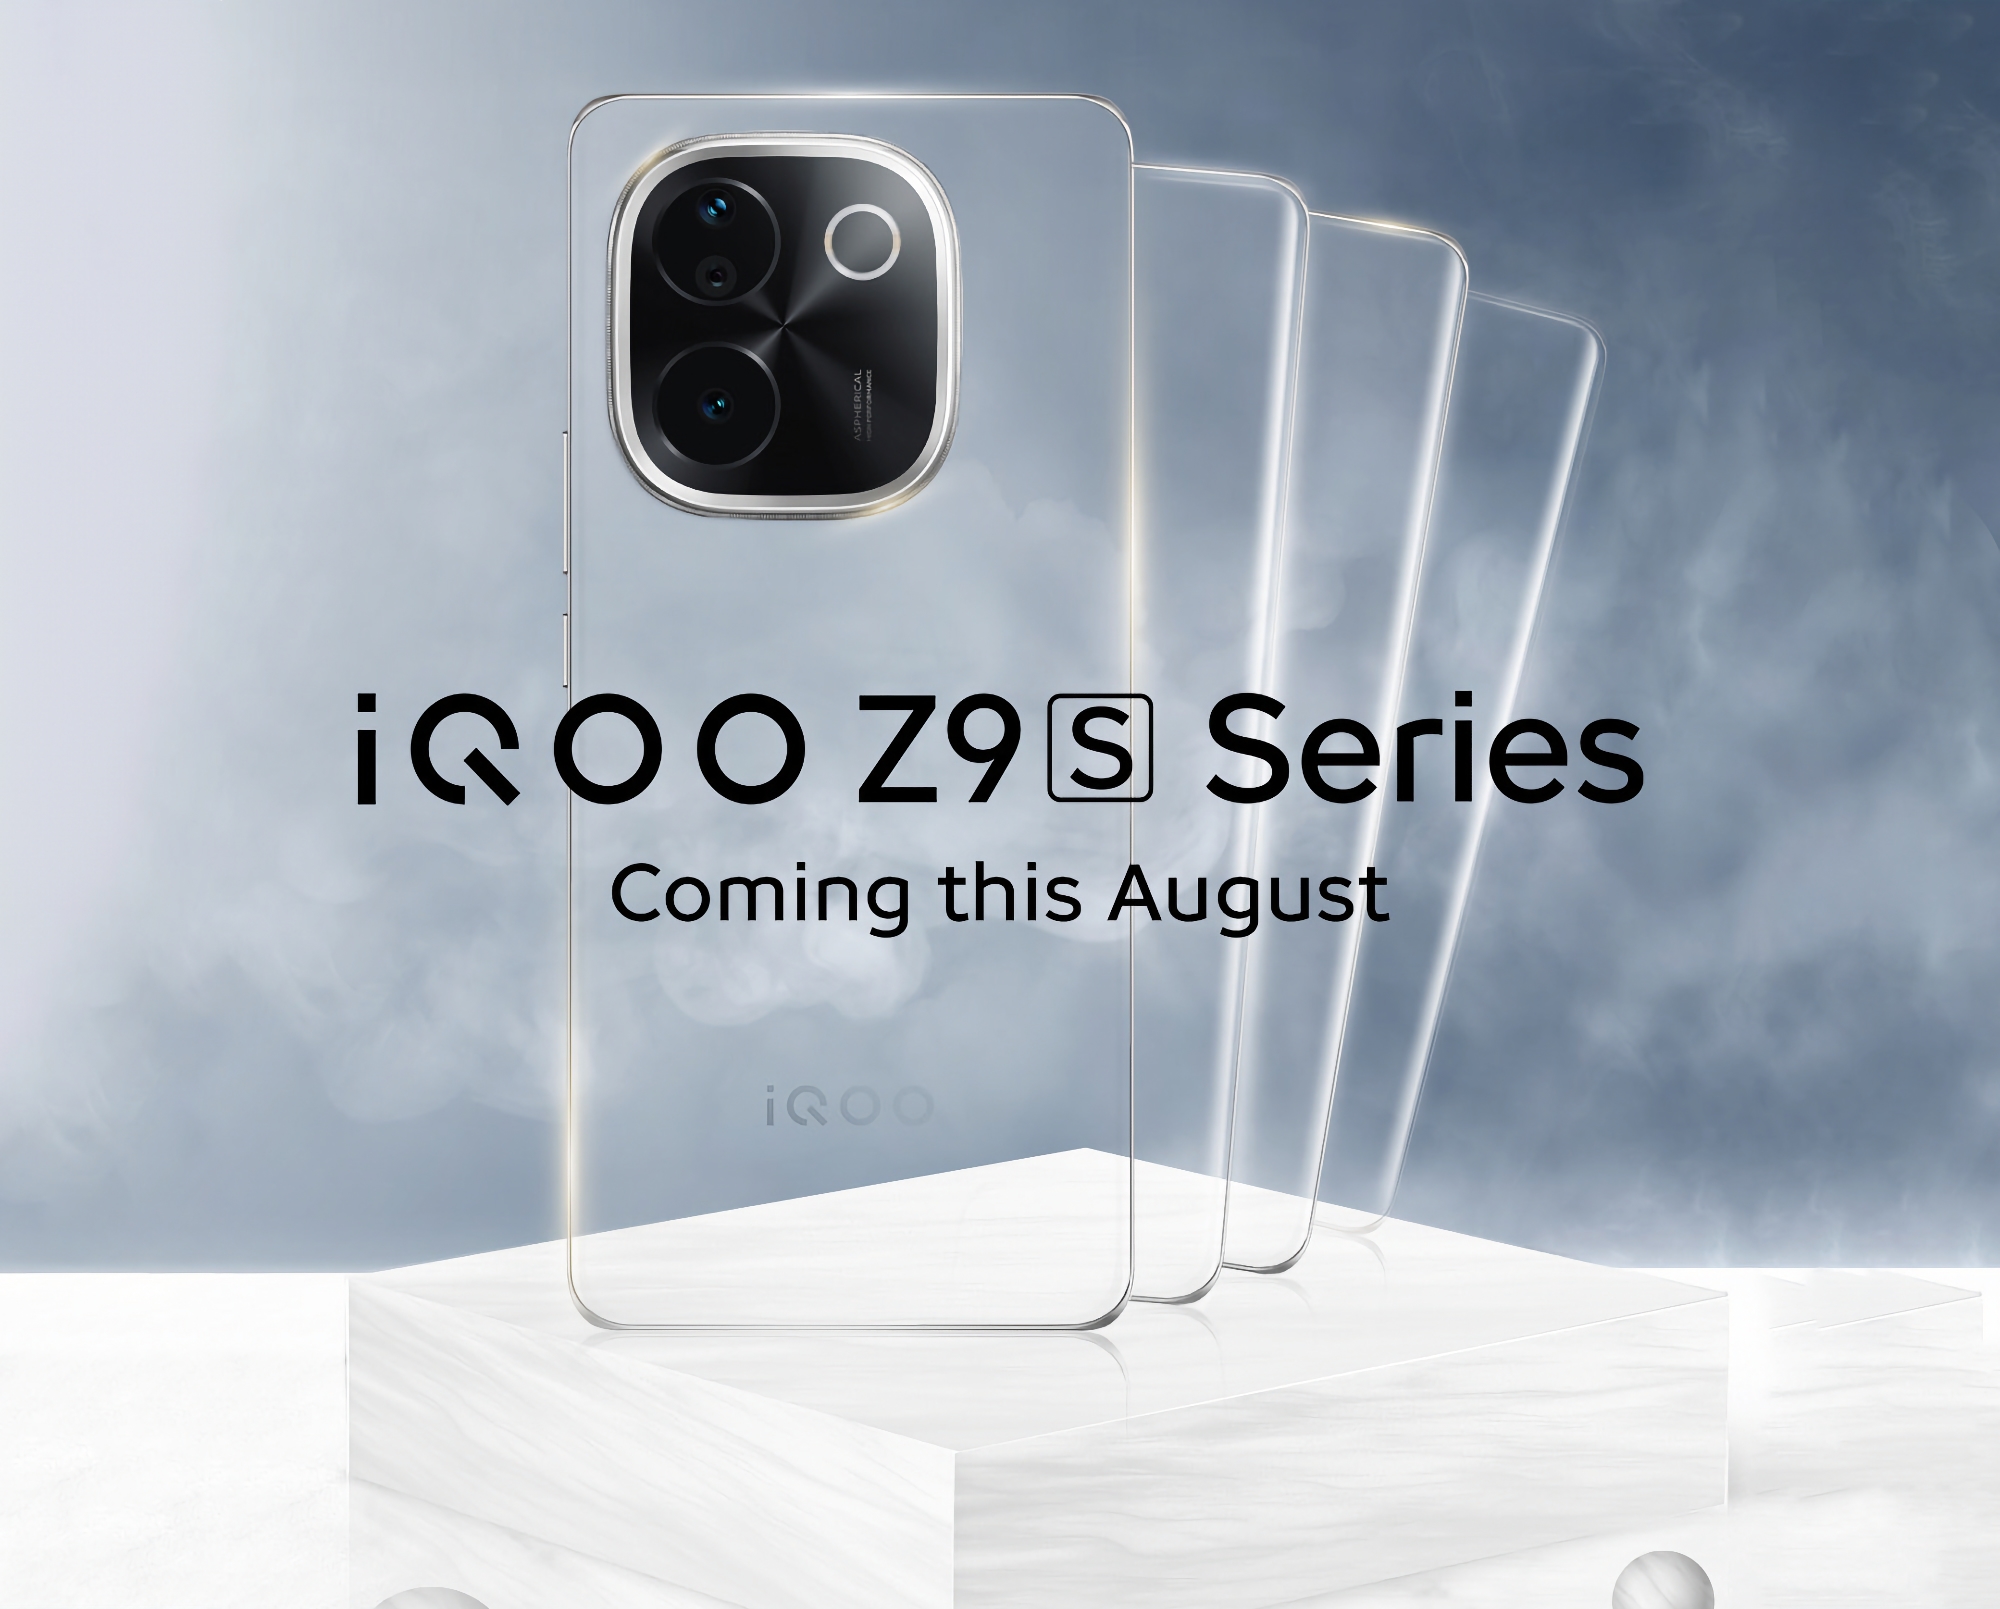 Es ist offiziell: vivo wird die iQOO Z9S Smartphone-Serie im August vorstellen